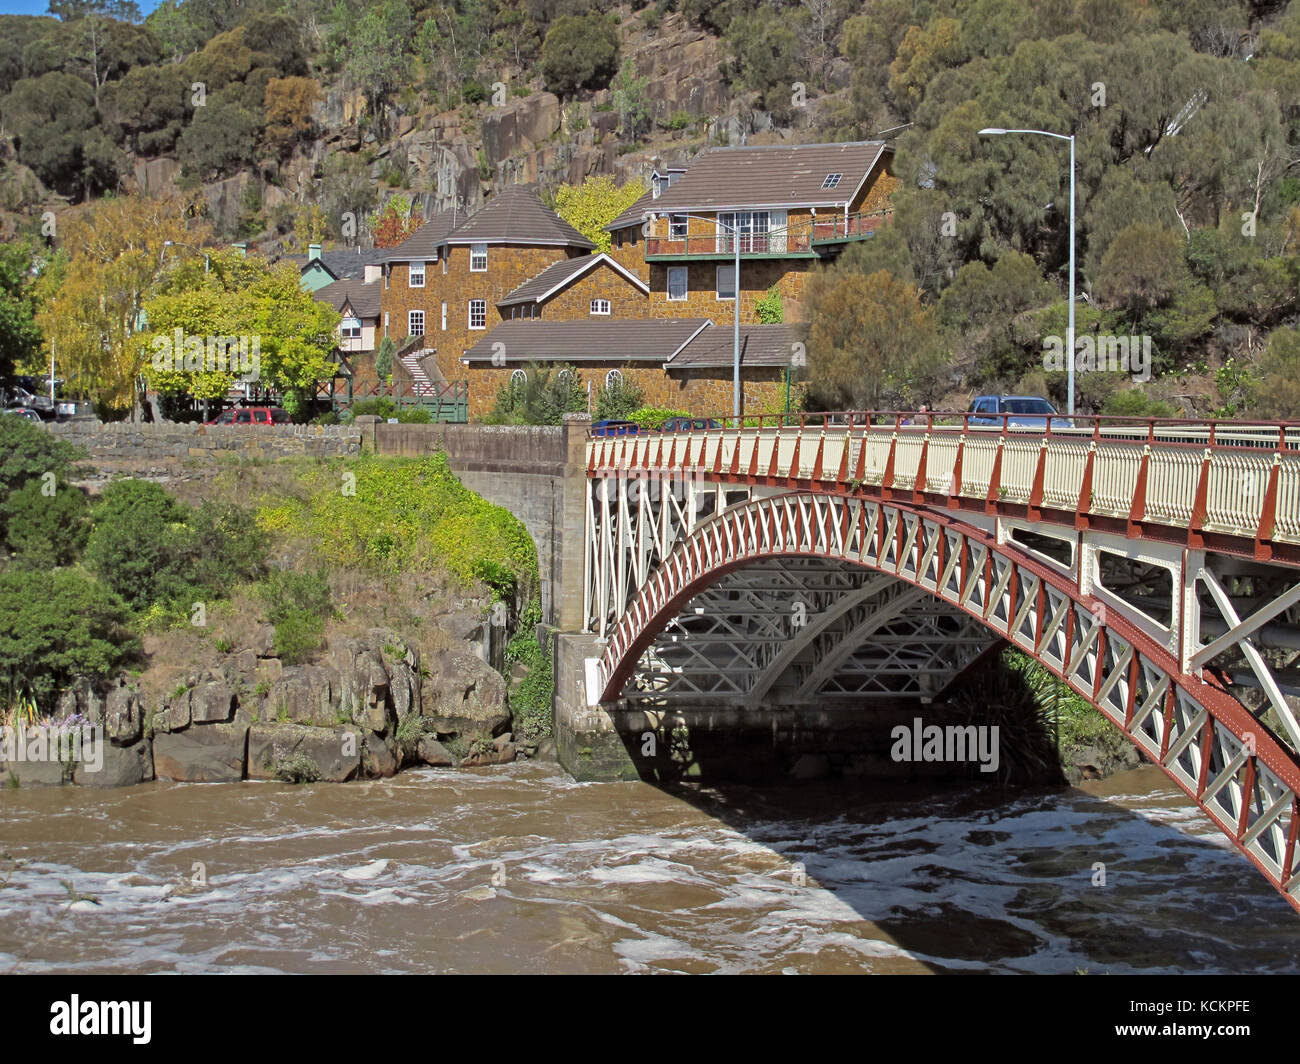 Kings Bridge, 1863 et 1903, au-dessus de la rivière South Esk. Launceston, Tasmanie, Australie Banque D'Images